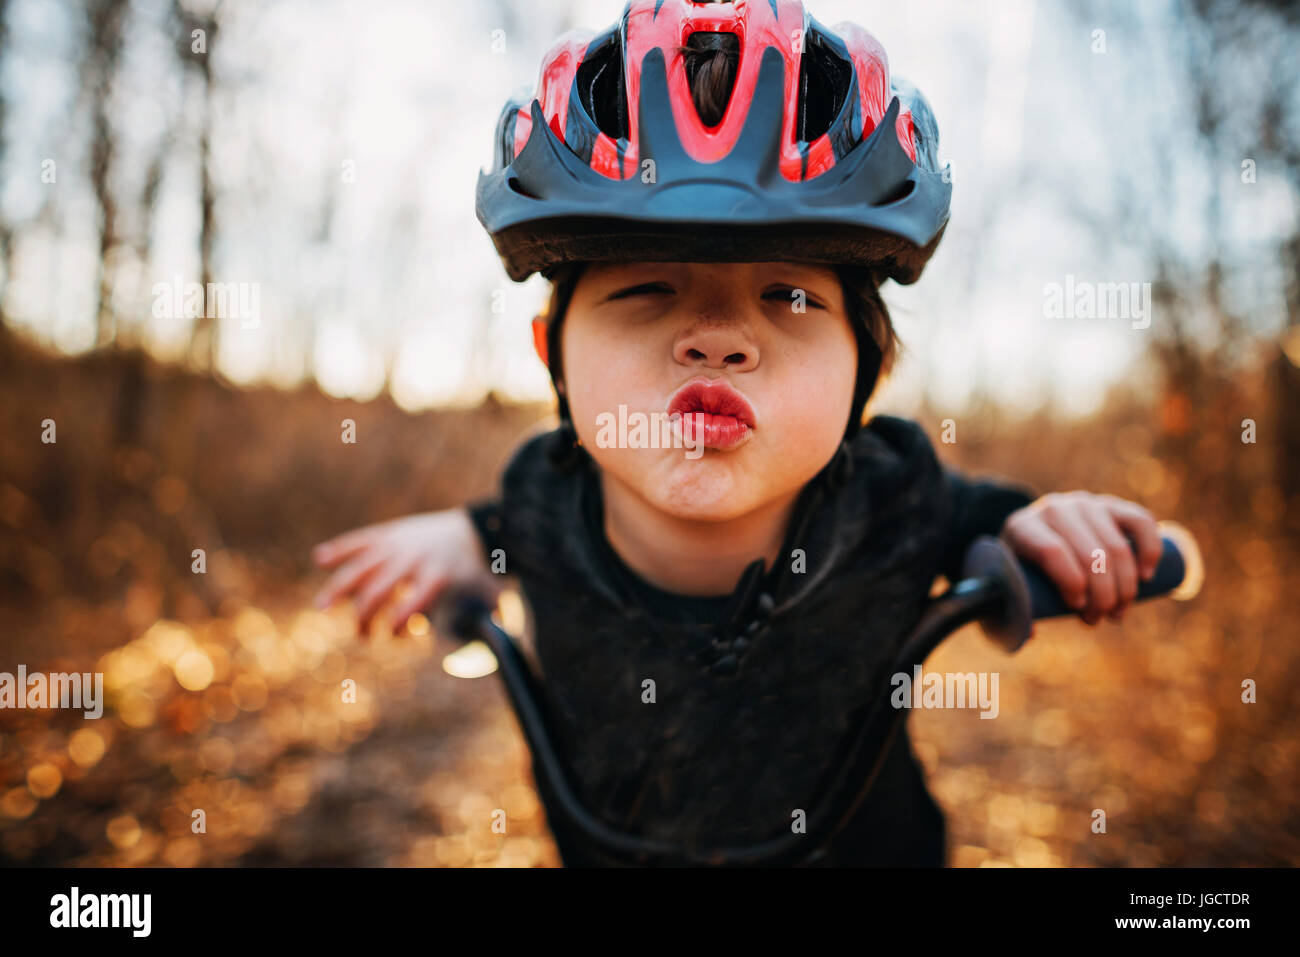 Ragazzo su una bicicletta che indossa un casco il raggrinzimento delle labbra Foto Stock